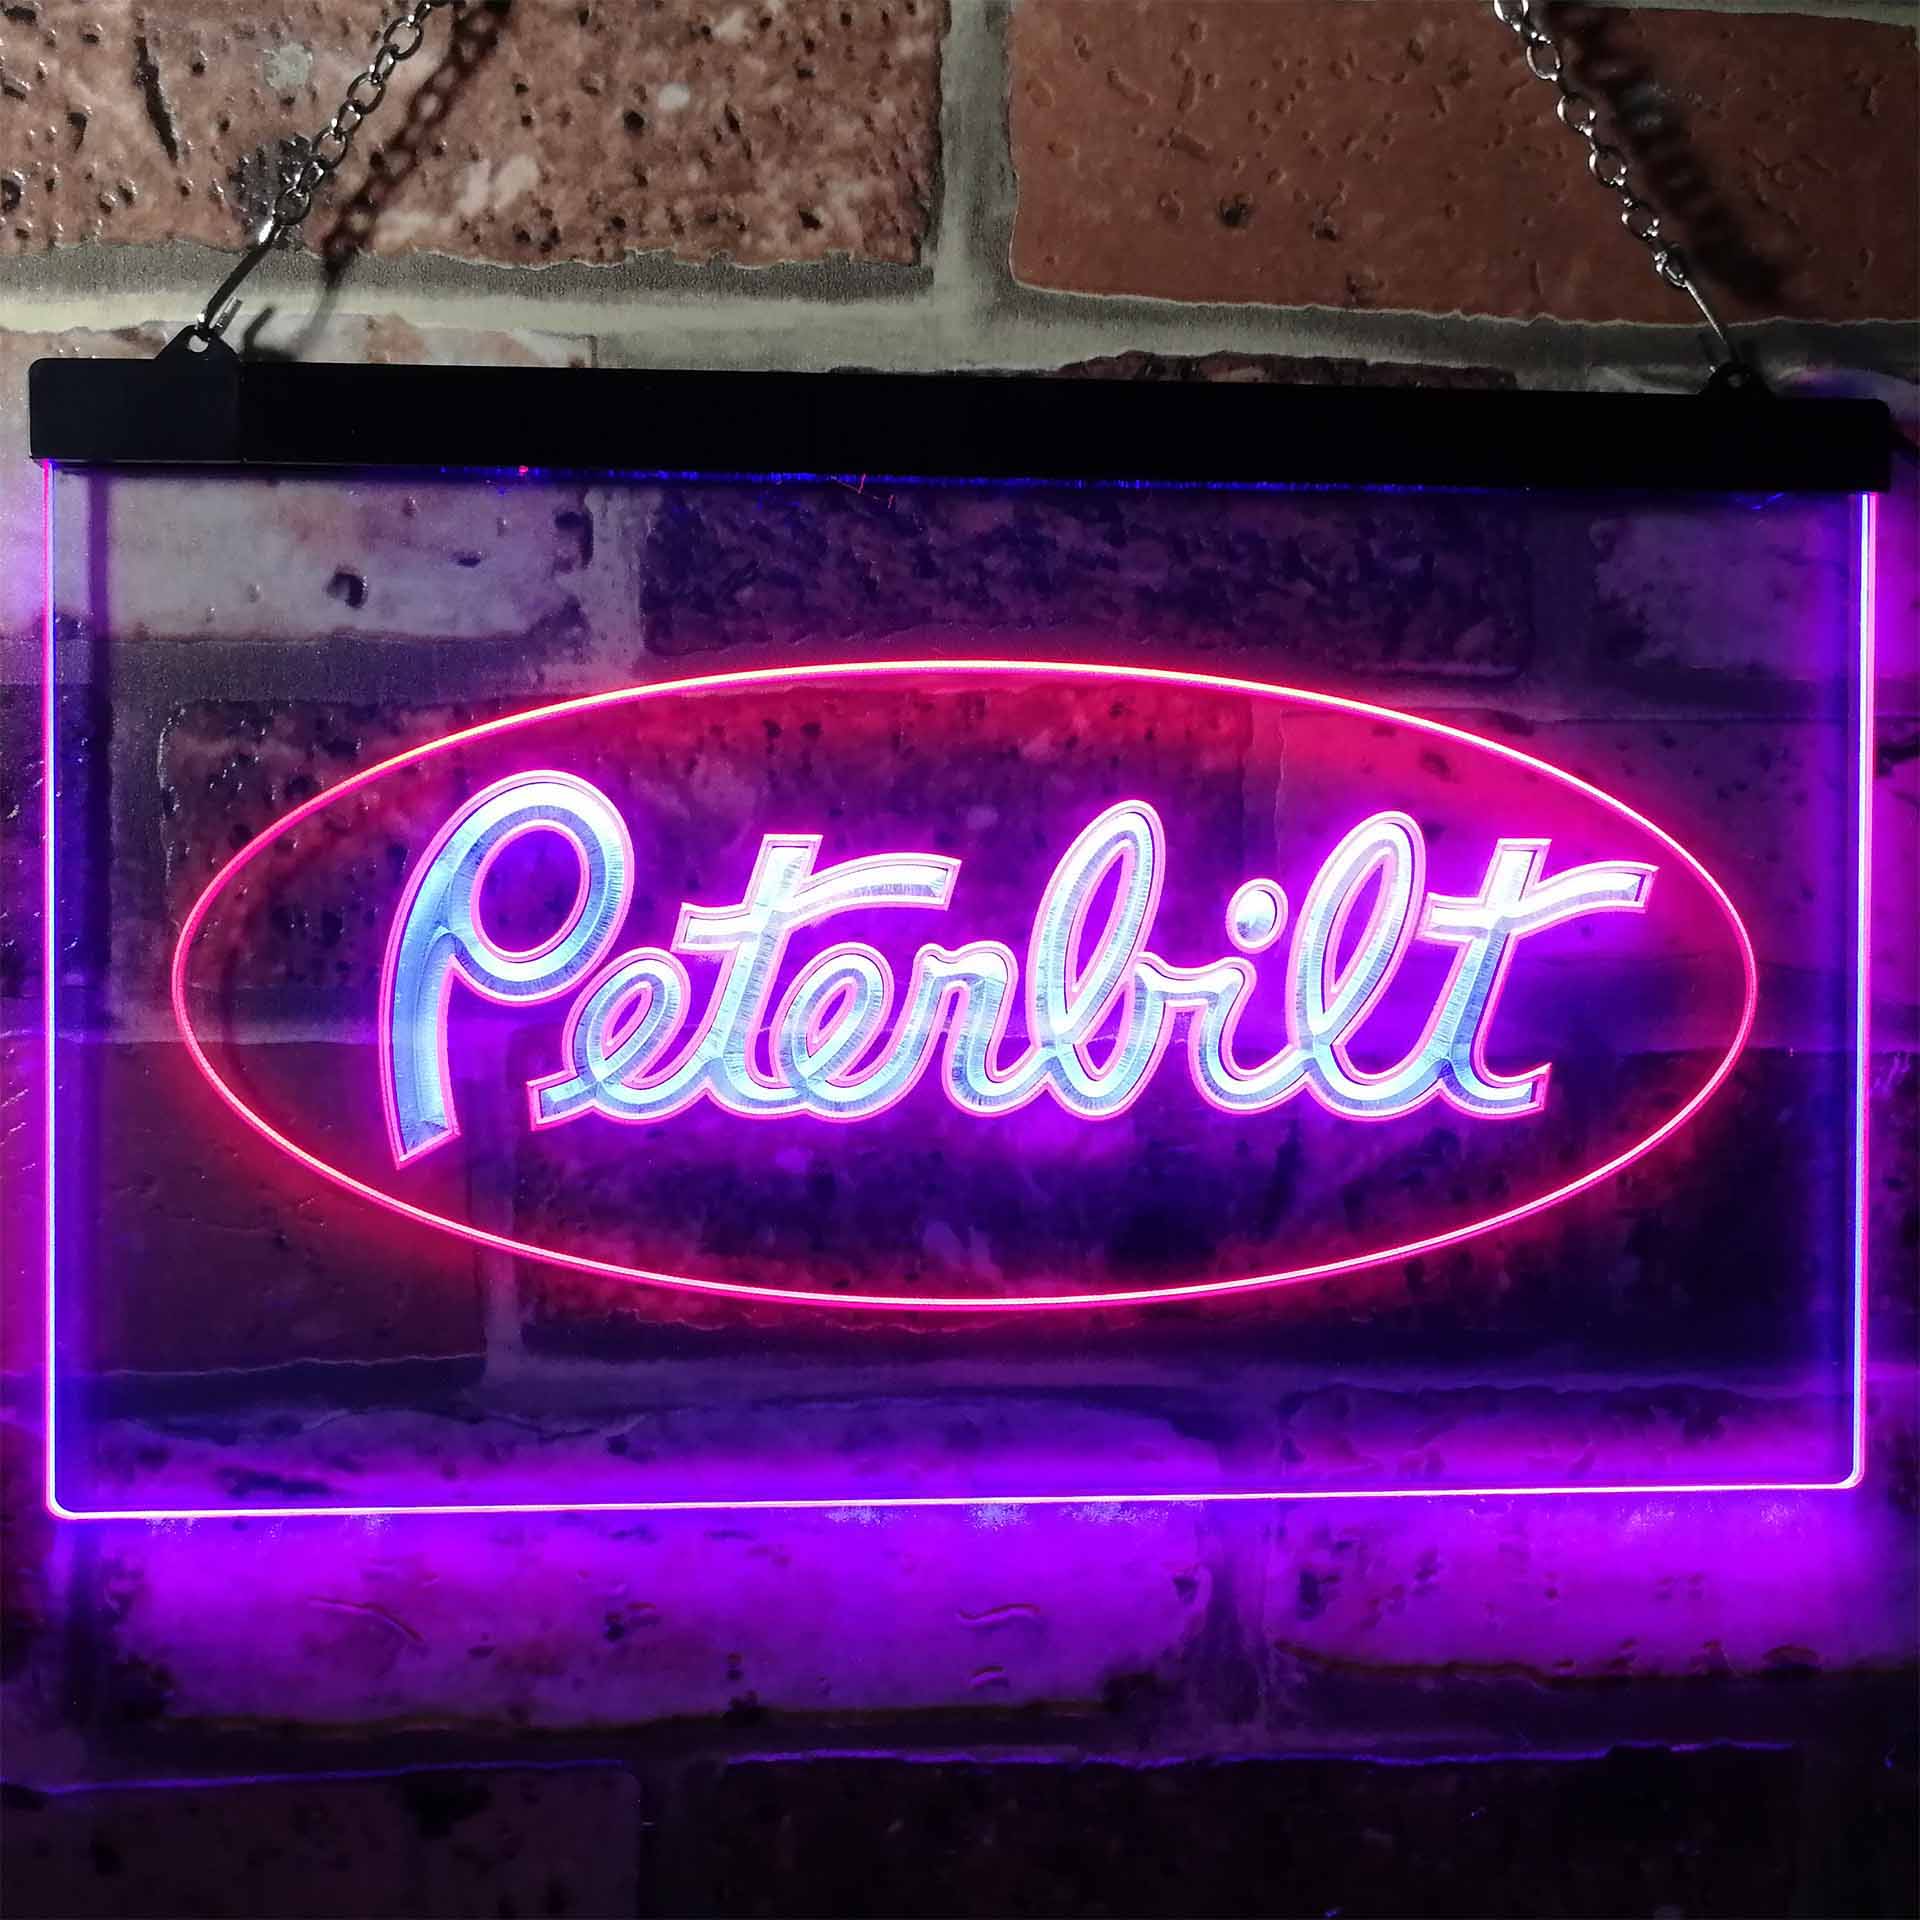 Peterbilt Car Bar Neon LED Sign